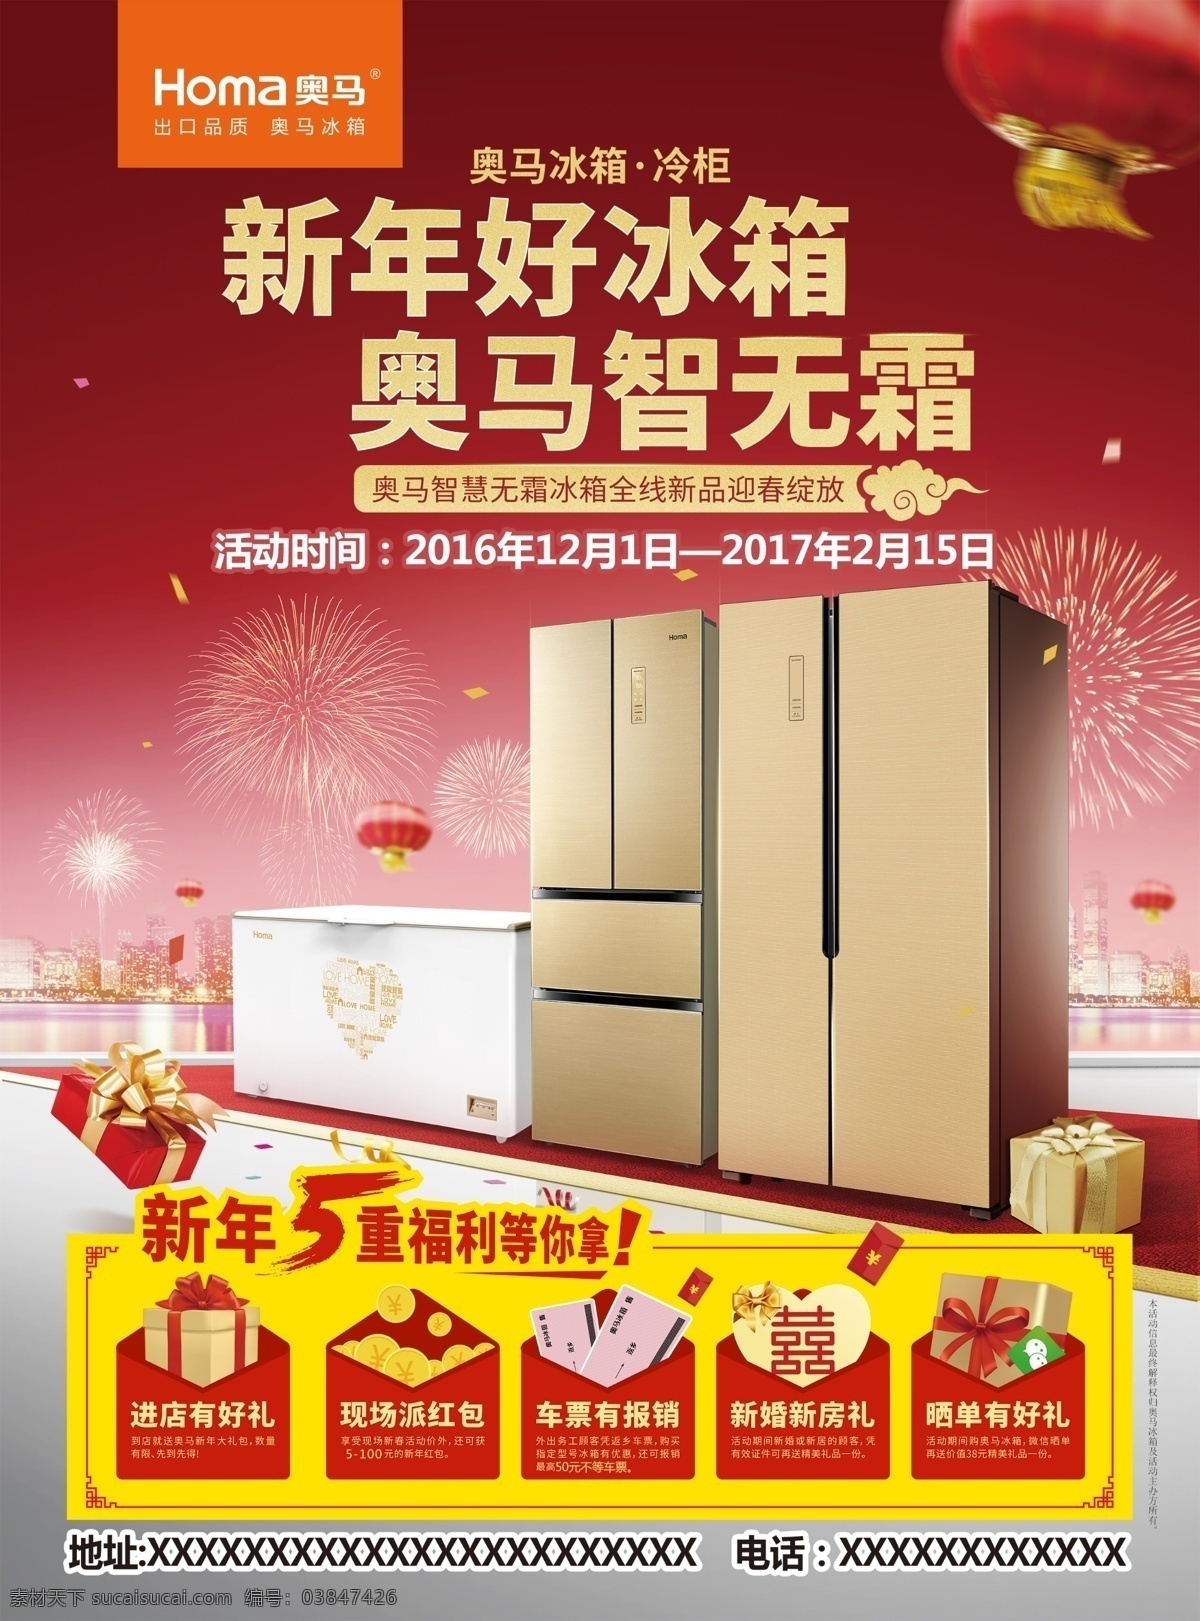 冰箱宣传单 冰箱广告 新年5重福利 智能无霜冰箱 喜庆红色背景